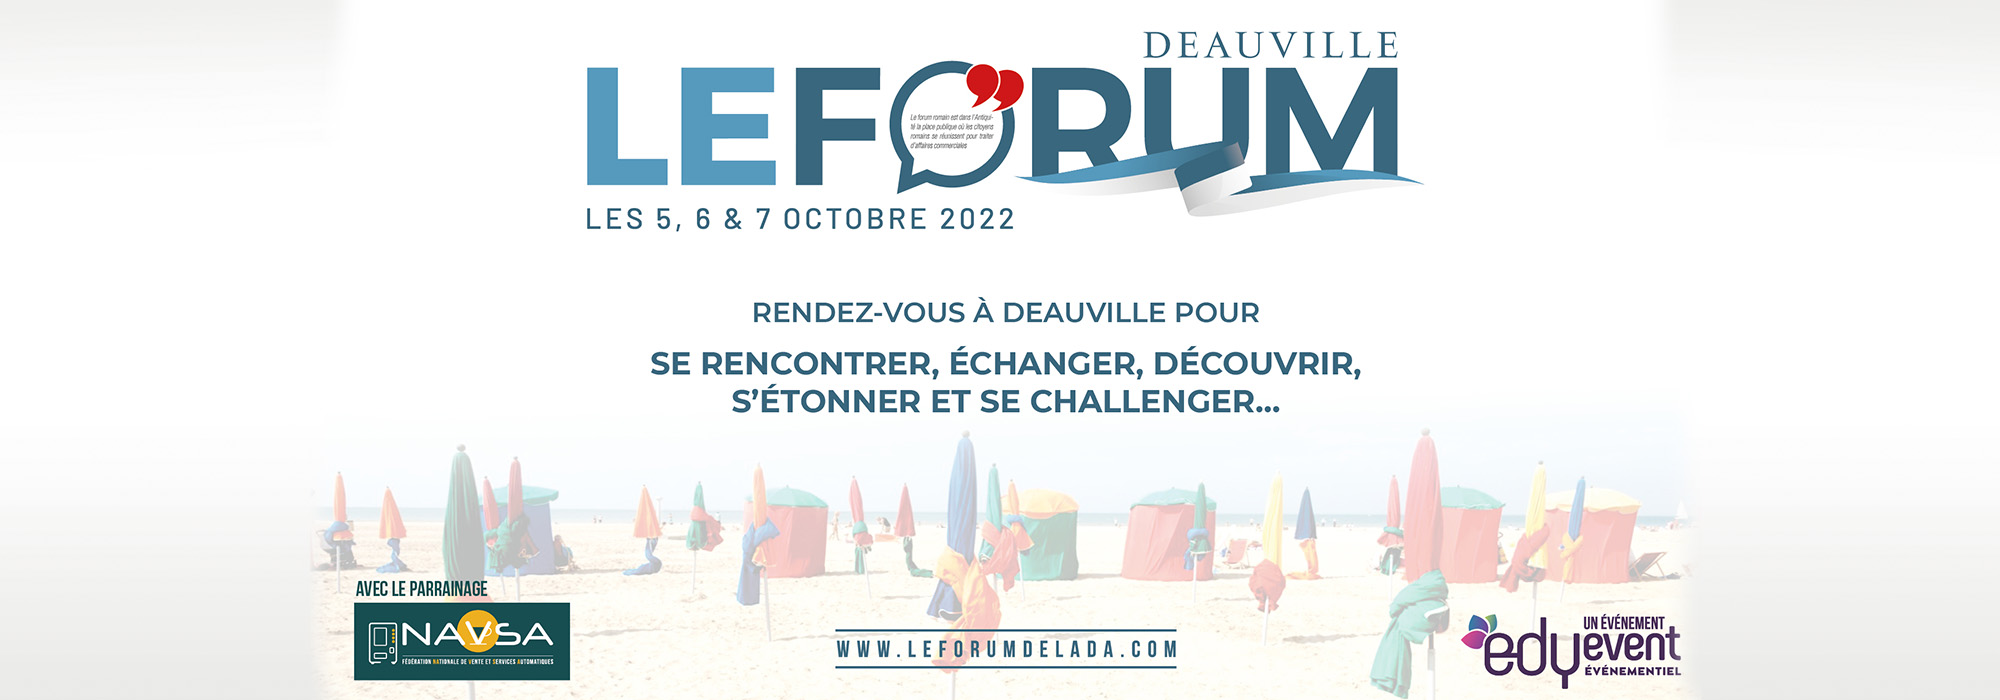 Deauville 2022